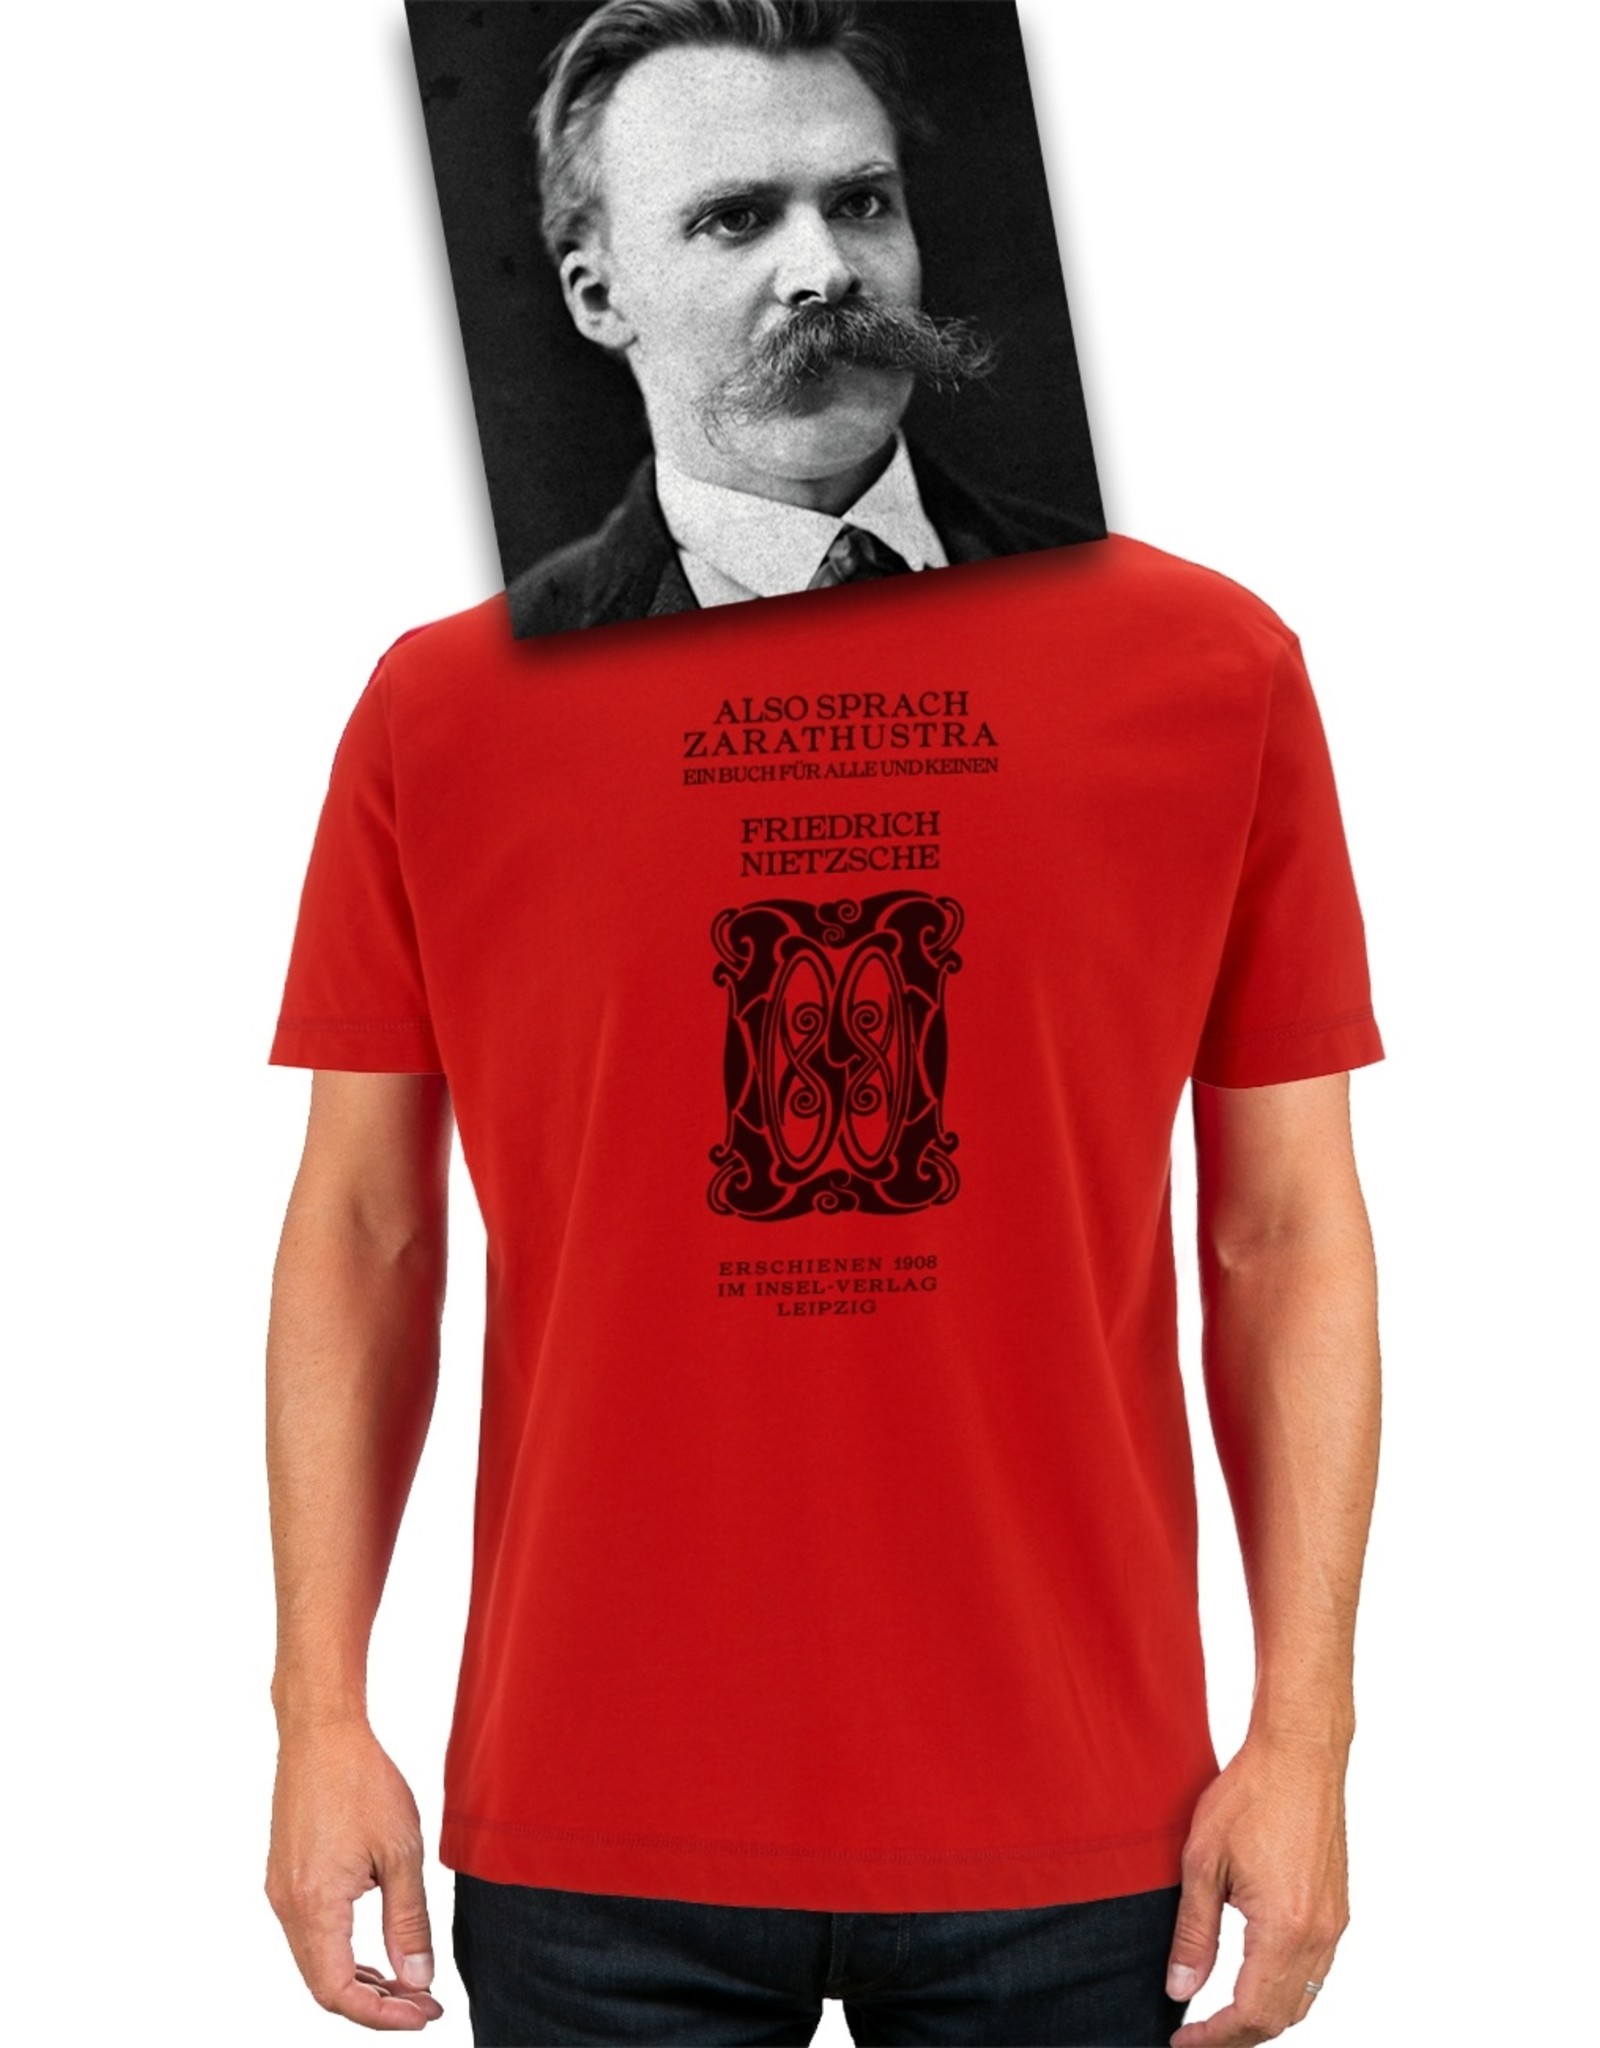 Friedrich Nietzsche Also sprach Zarathustra ♂ (red)